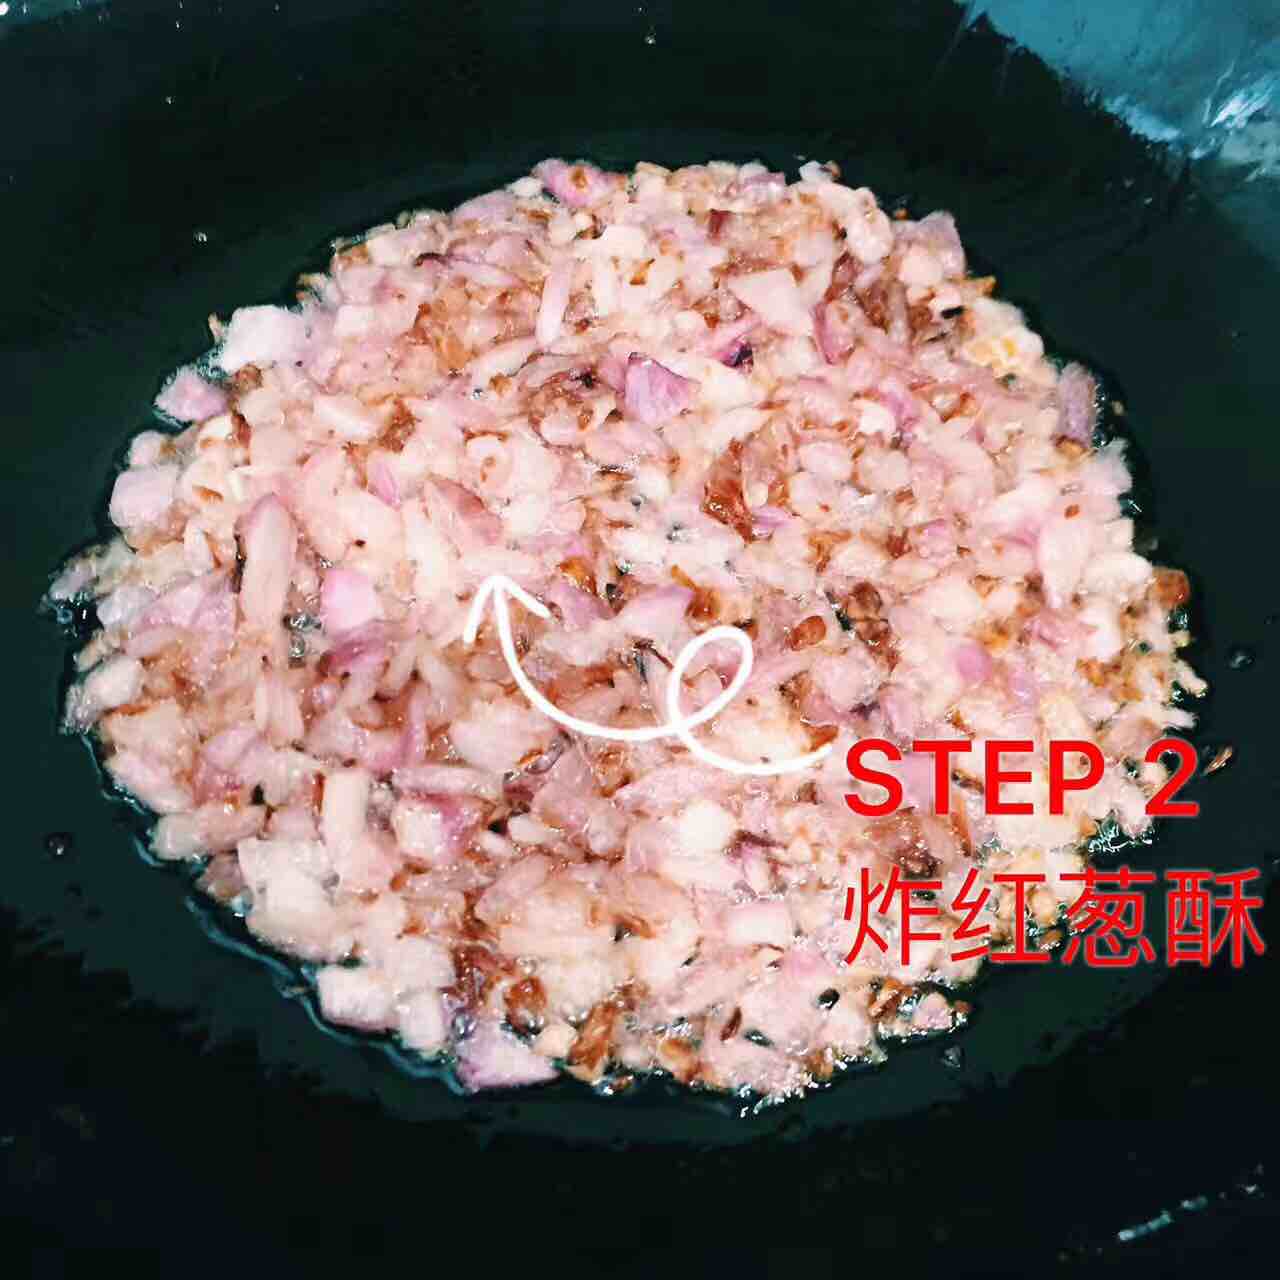 Liqiu's Braised Pork Rice recipe